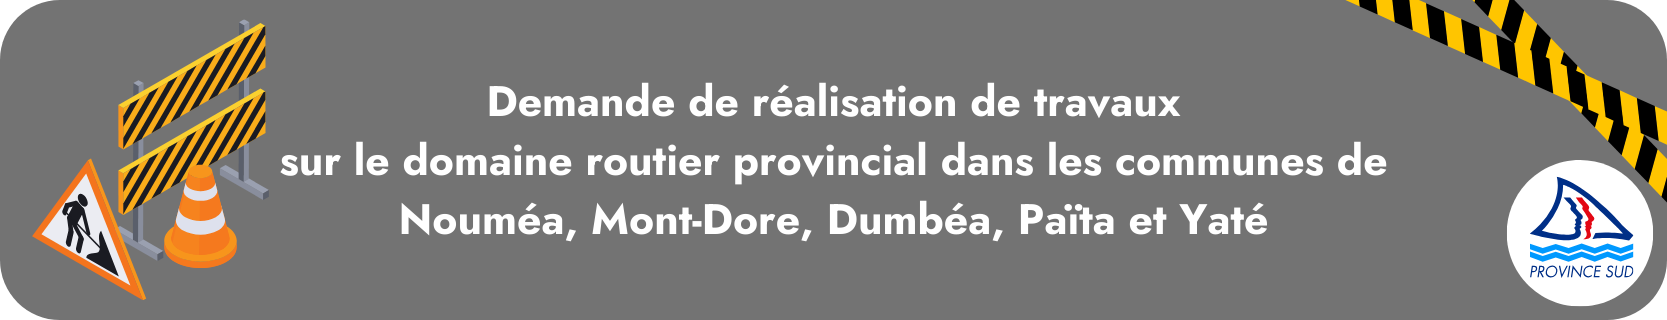 Demande de réalisation de travaux sur le domaine routier provincial dans les communes de Nouméa, Mont-Dore, Dumbéa, Païta et Yaté